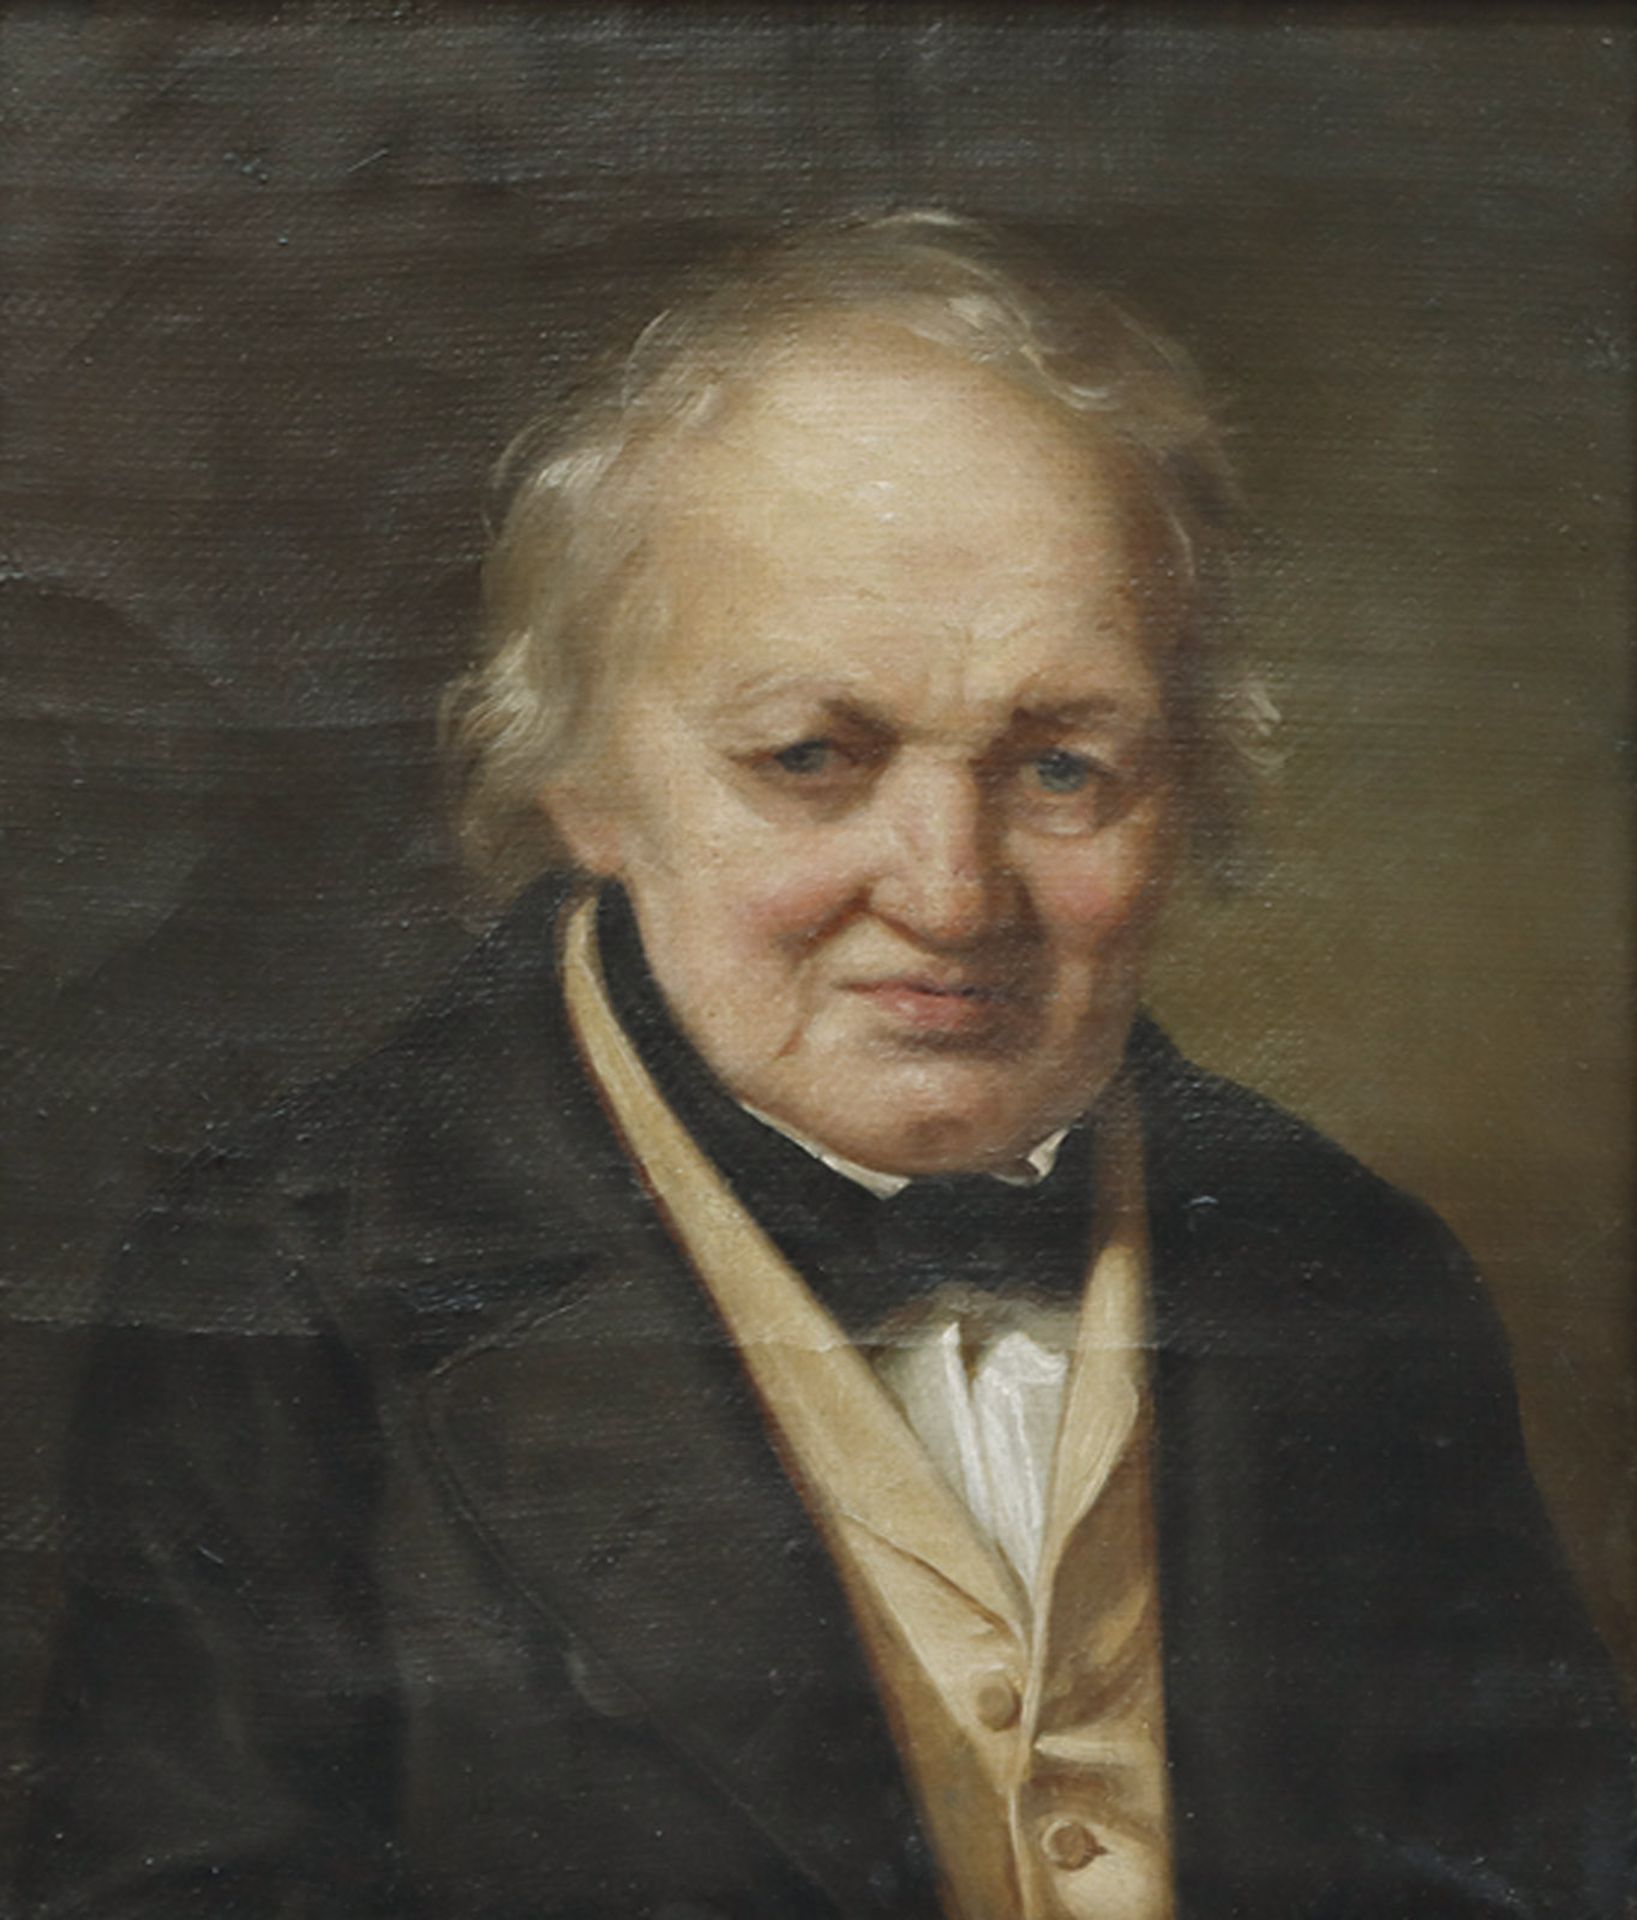 DEUTSCHER KÜNSTLER: Brustbild des Malers Georg Friedrich Eberhard Wächter.